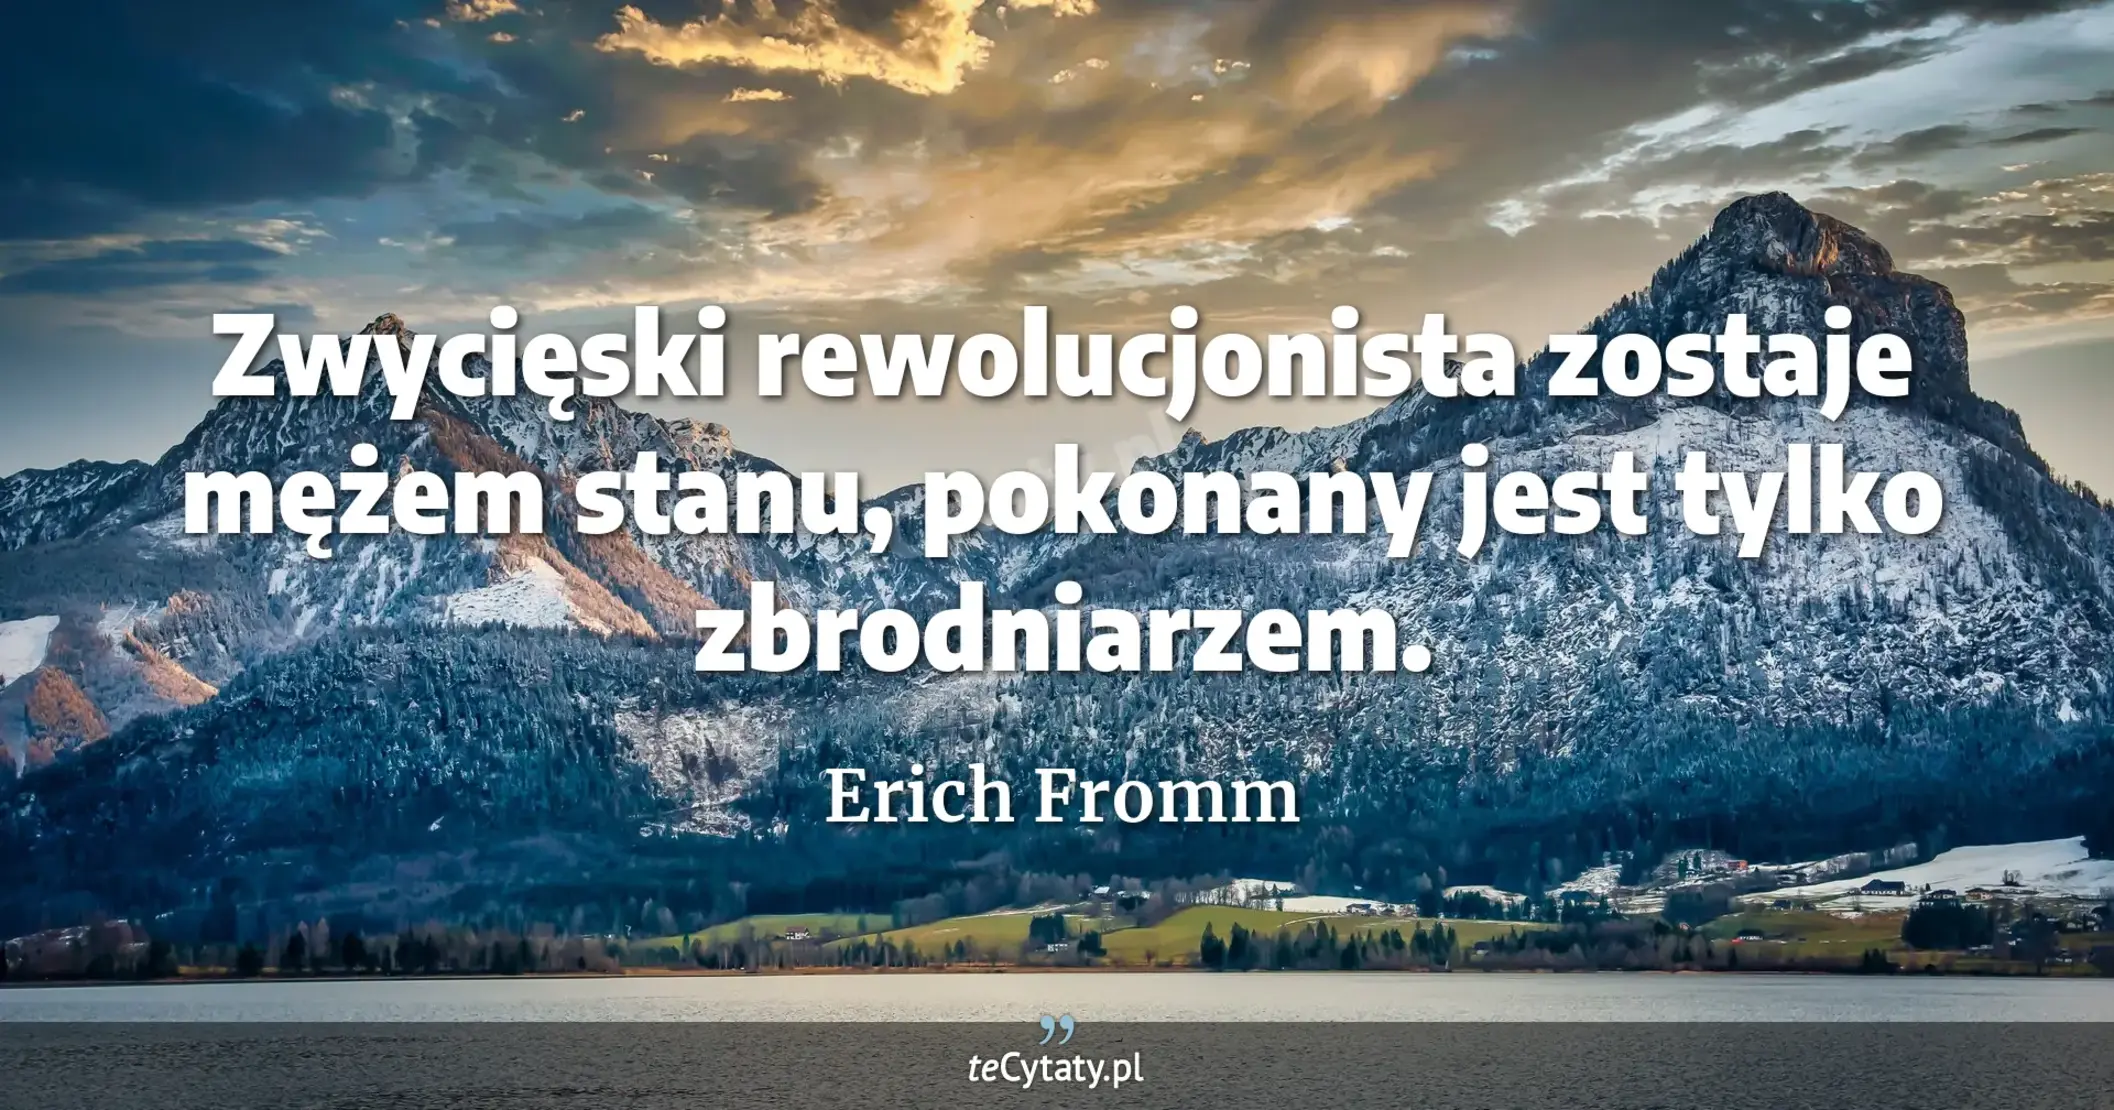 Zwycięski rewolucjonista zostaje mężem stanu, pokonany jest tylko zbrodniarzem. - Erich Fromm